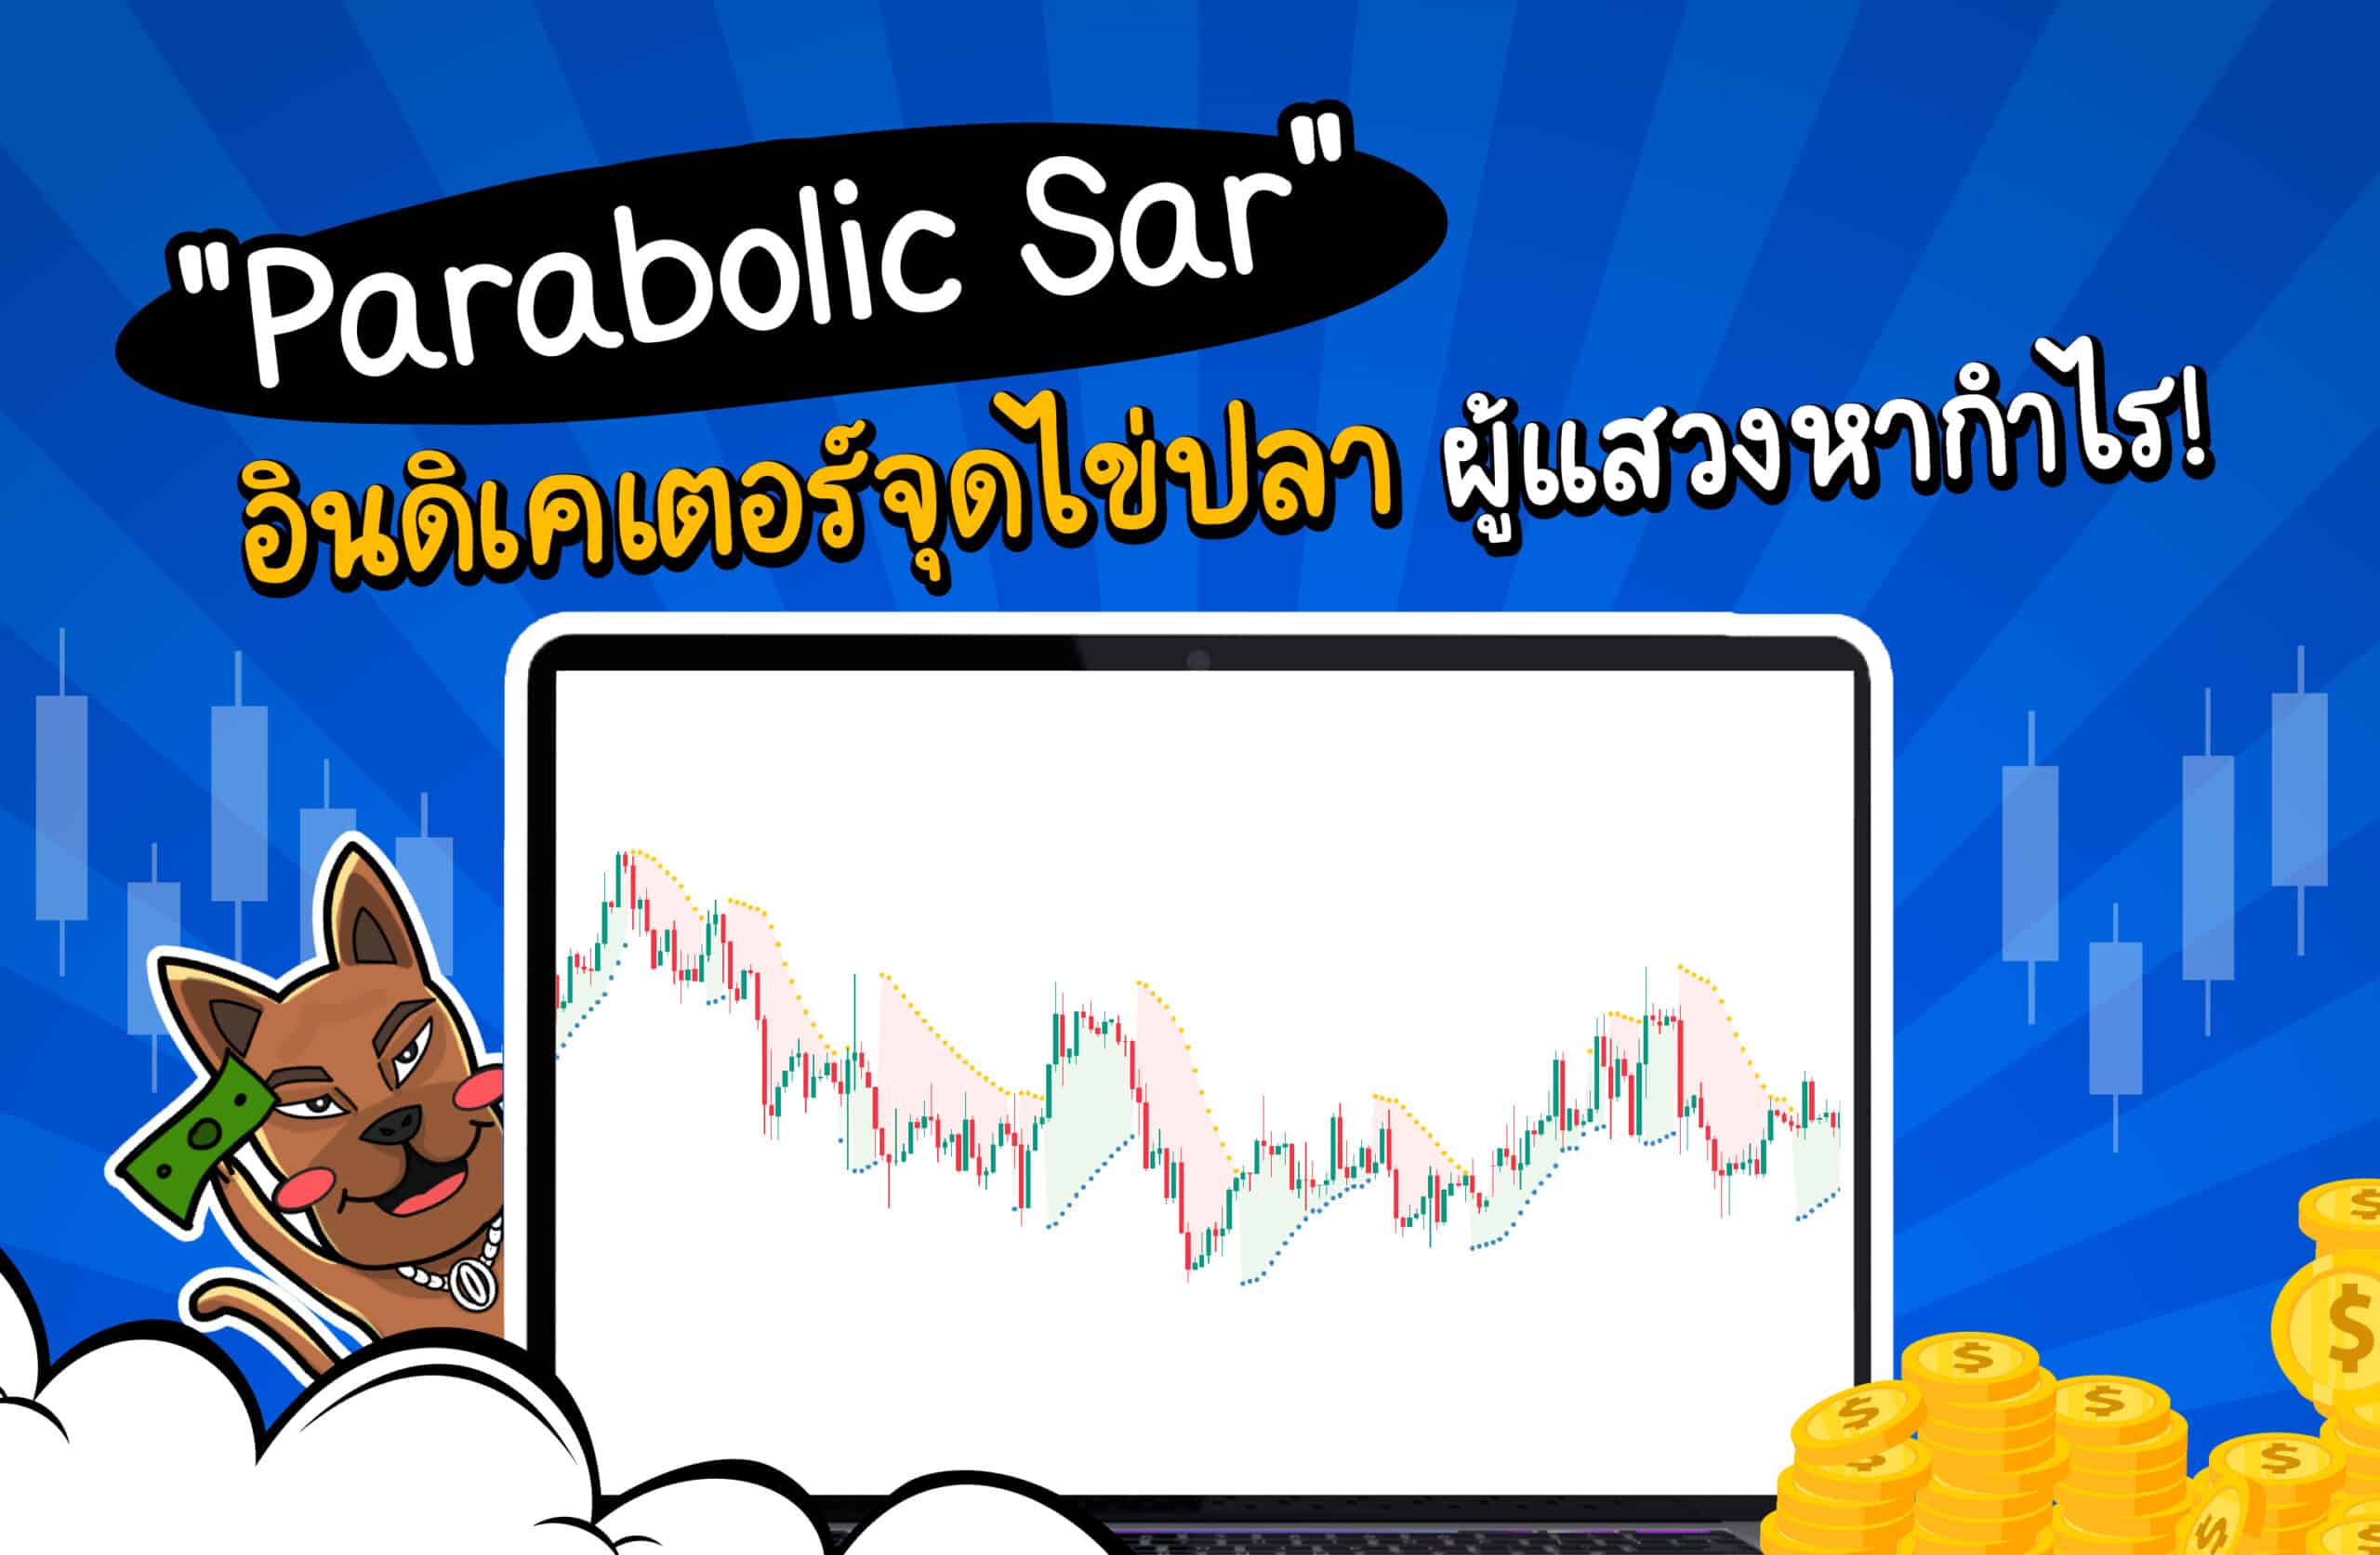 Parabolic Sar คืออินดิเคเตอร์จุดไข่ปลา ผู้แสวงกำไร!